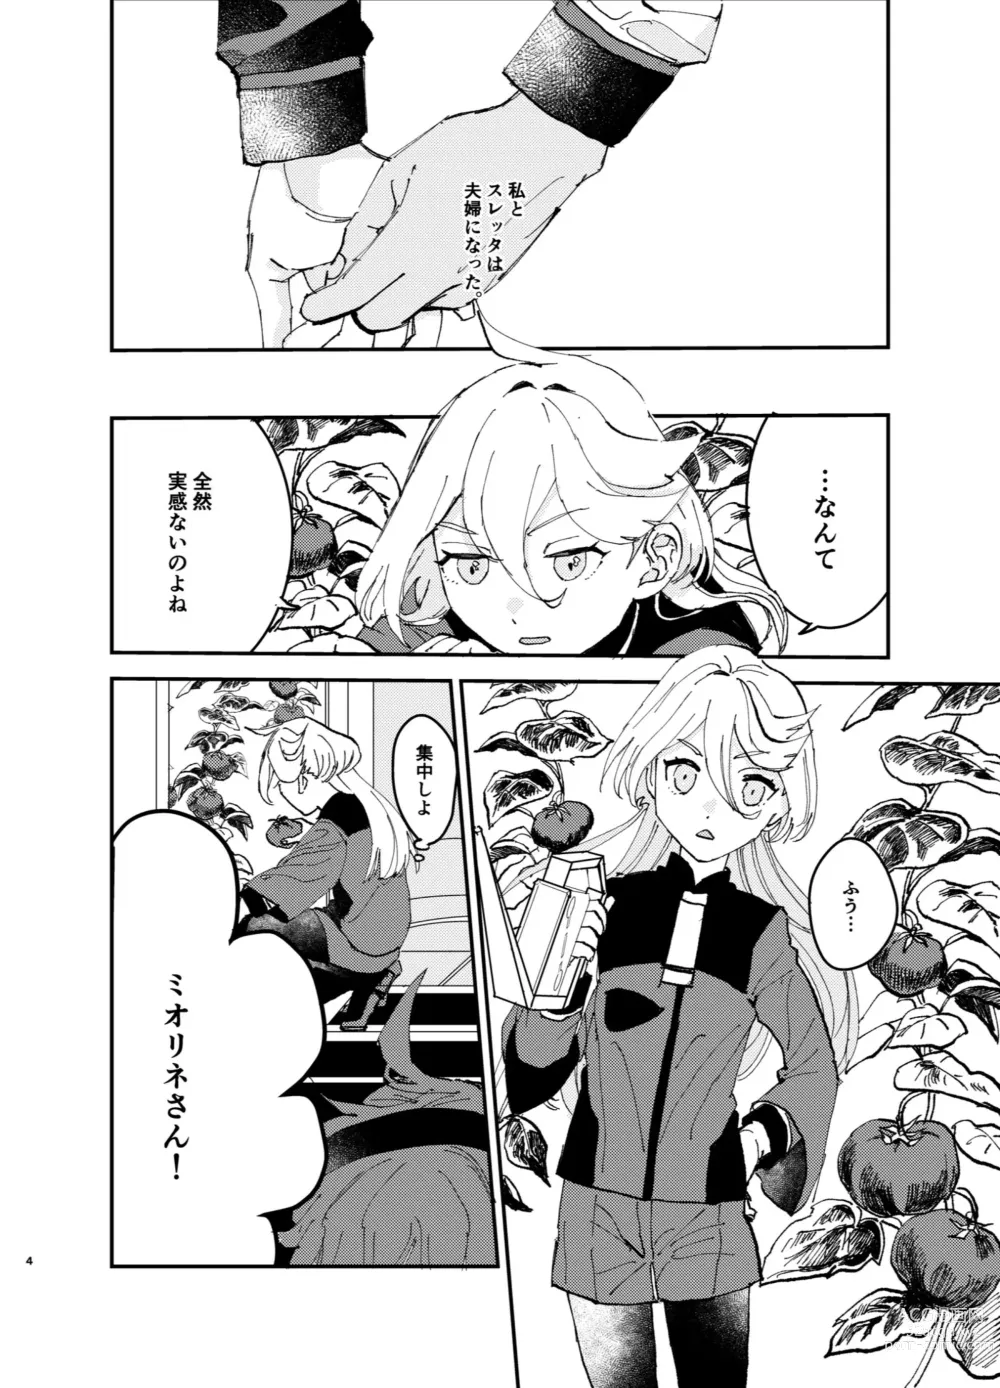 Page 3 of doujinshi Fuufu ni Naruniha